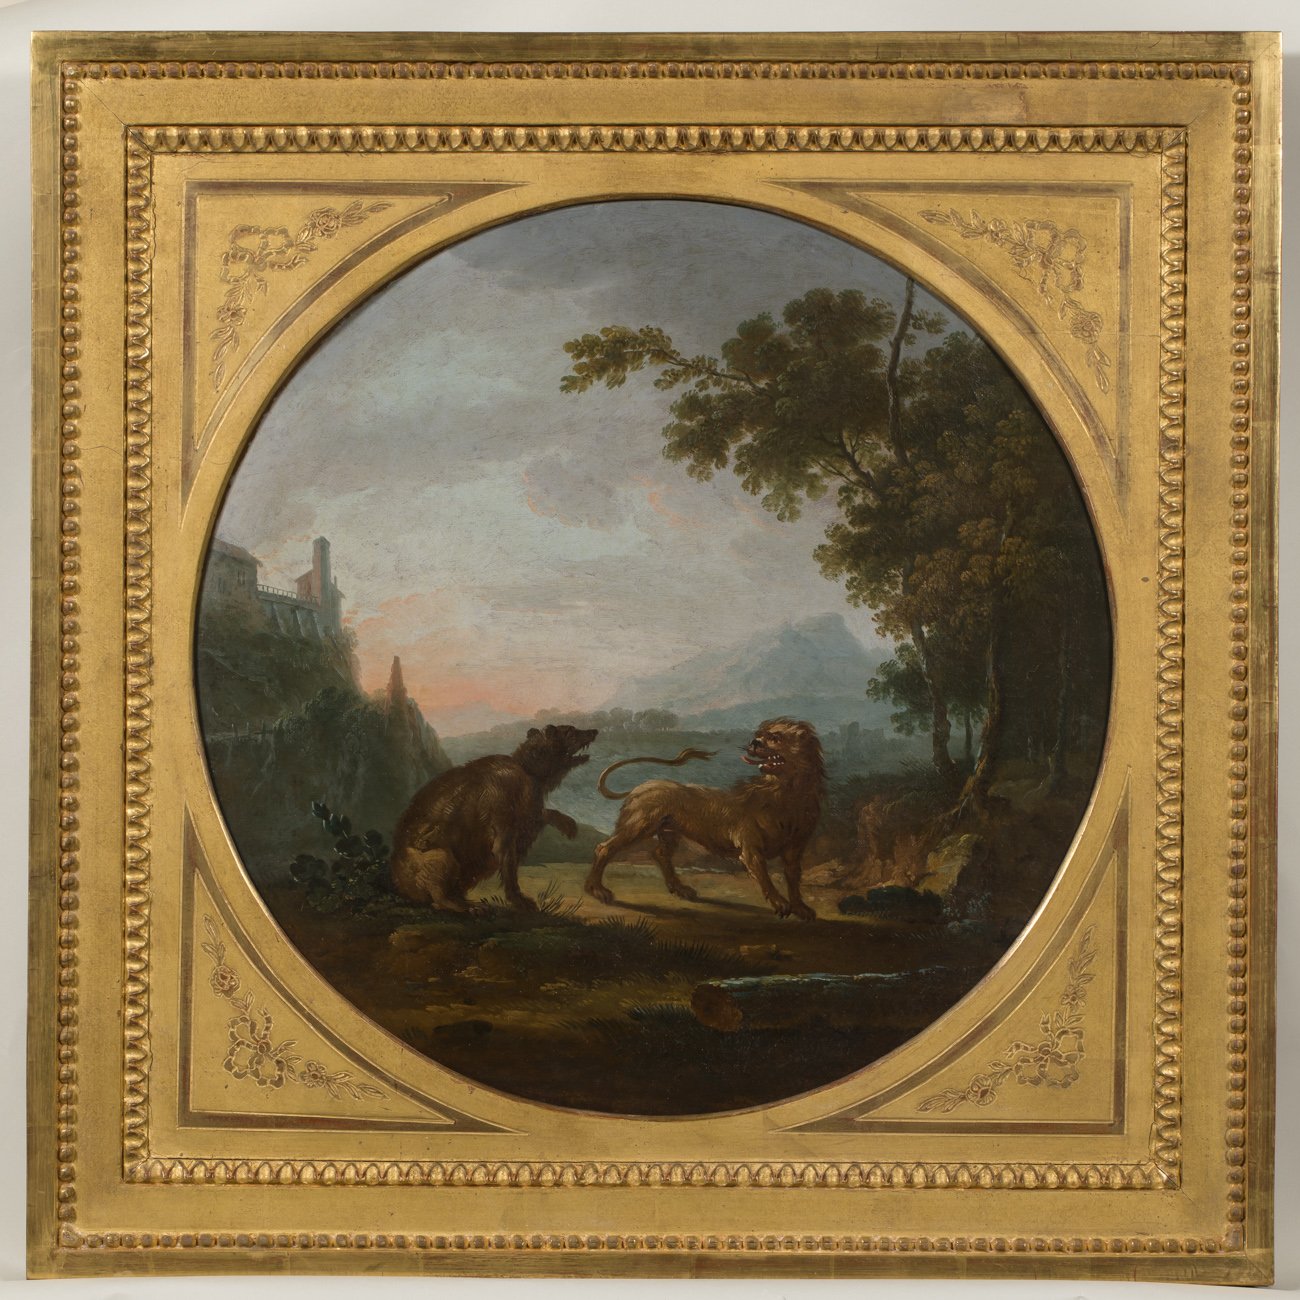 La Lionne et l'Ourse <br>Jean-Baptiste Claudot, XVIIIe siècle, huile sur bois<br><small>© Musée Jean de La Fontaine, Château-Thierry - Jean-Yves Lacôte</small>